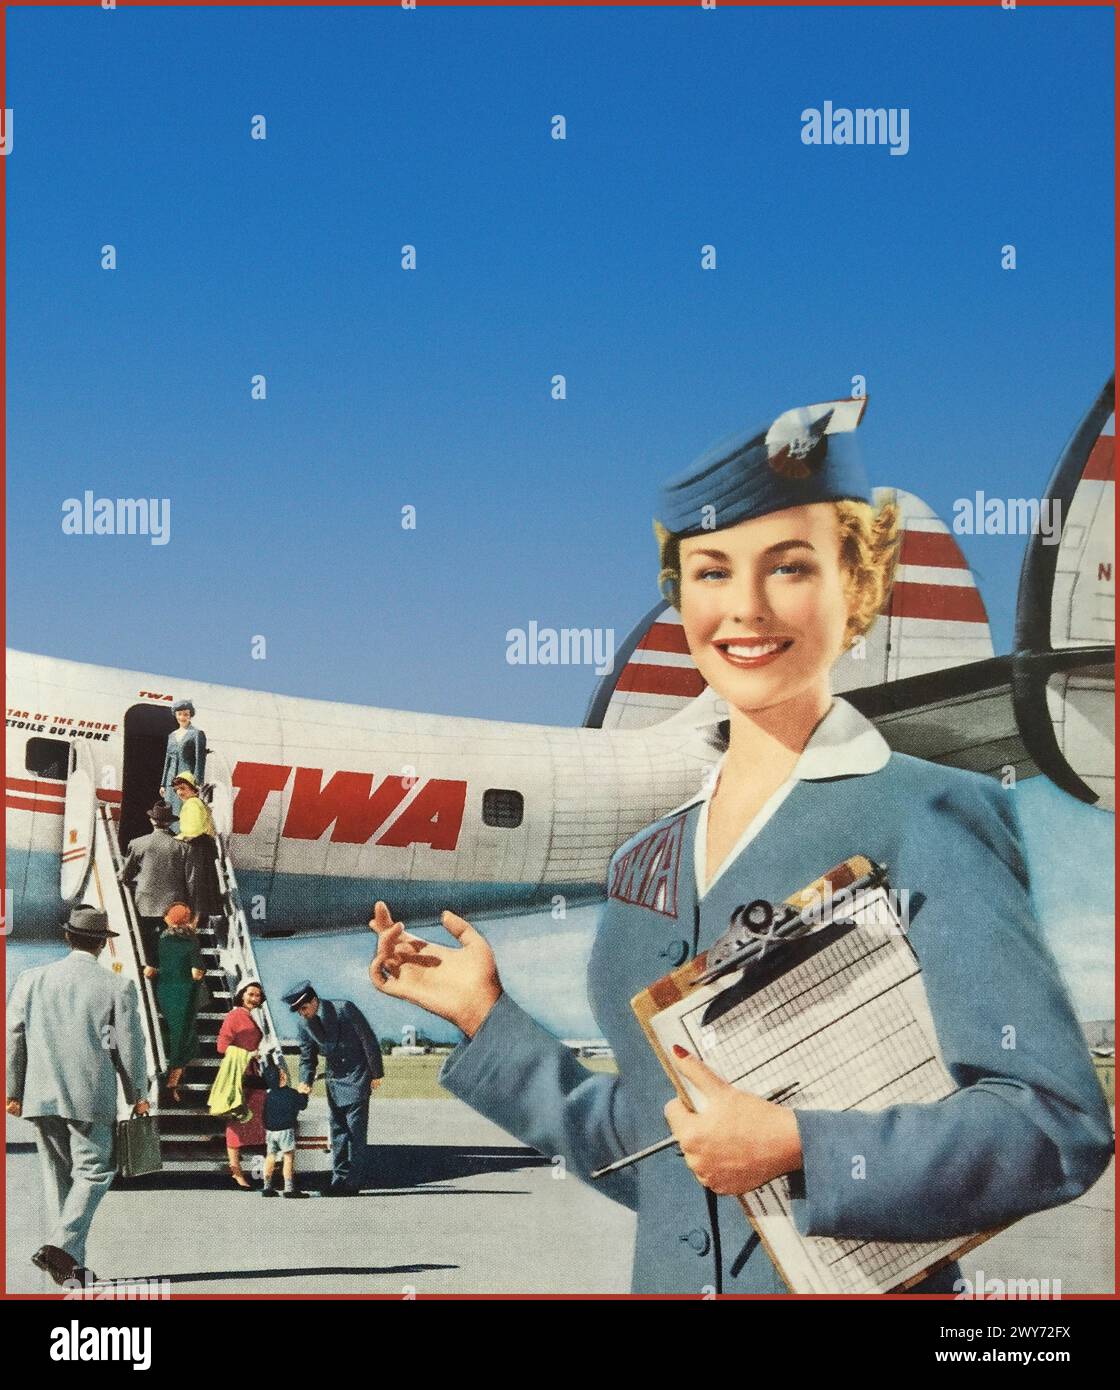 Das goldene Zeitalter der Fliegerei 1950 mit einer Air Hostess in TWA-Uniform, die Passagiere an Bord des Flugzeugs TWA Lockheed Super Constellation an einem klaren, sonnigen Tag begrüßt. Der Kapitän der Fluggesellschaft begrüßt ein Kind an Bord. Werbeaktion Pressemagazin. Stockfoto